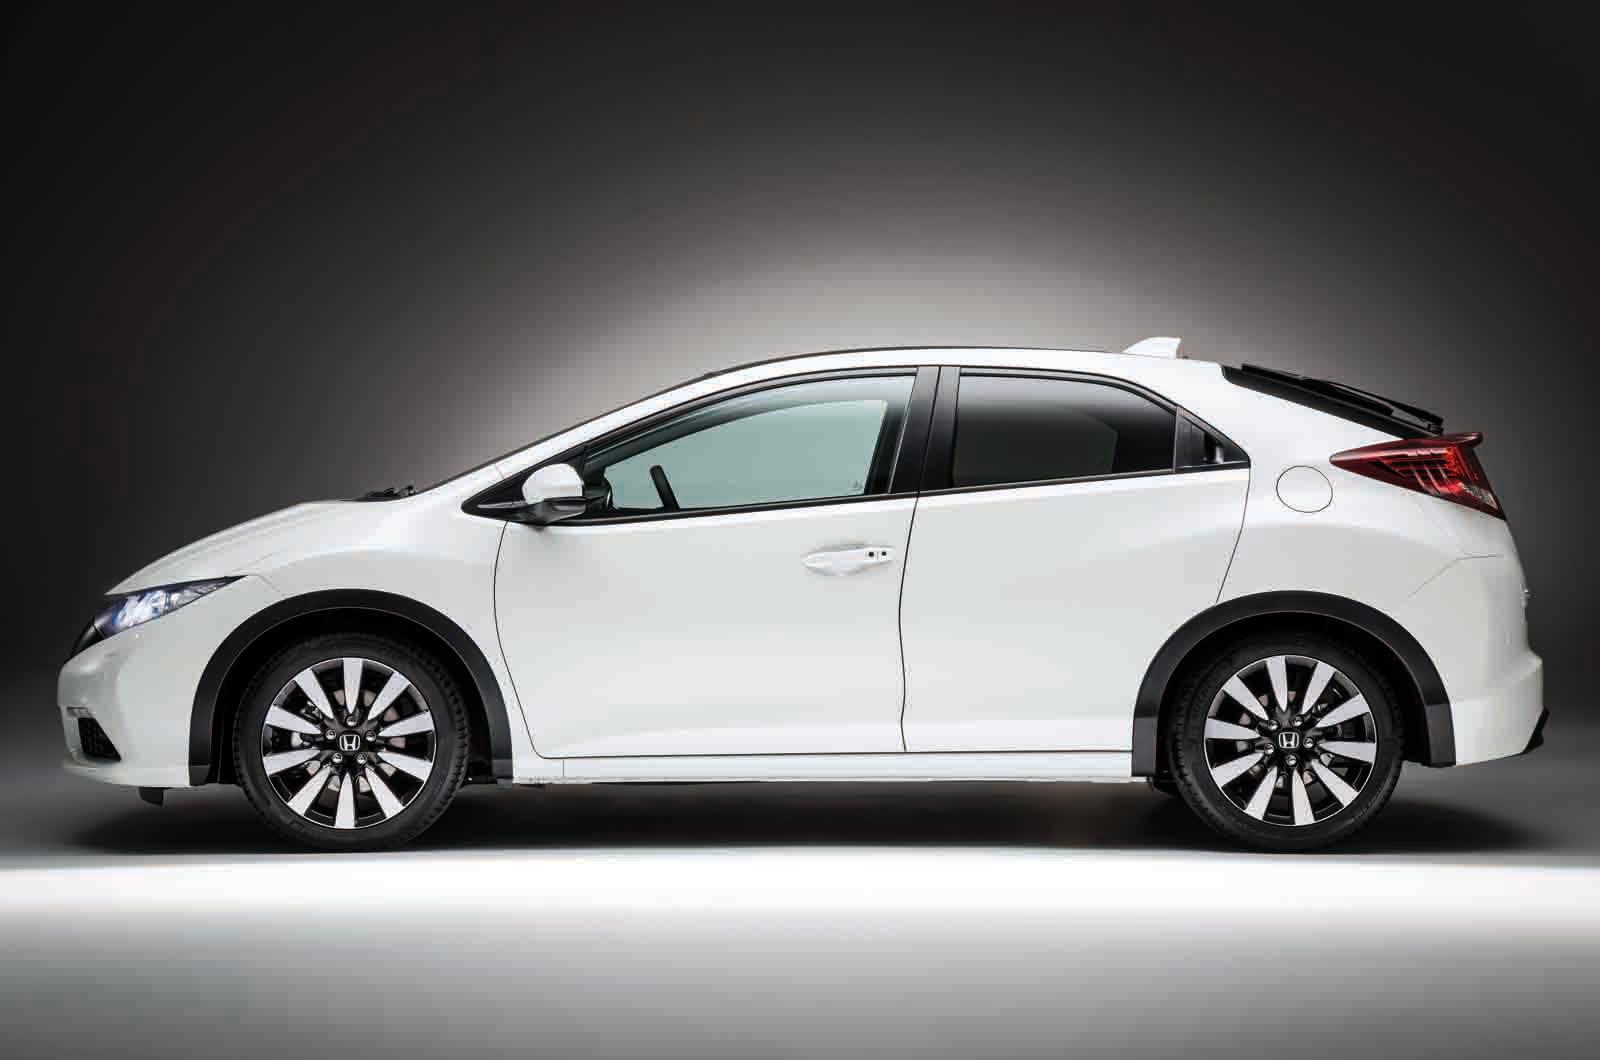 Desain Anyar Honda Civic Hatchback 2014 Merdekacom